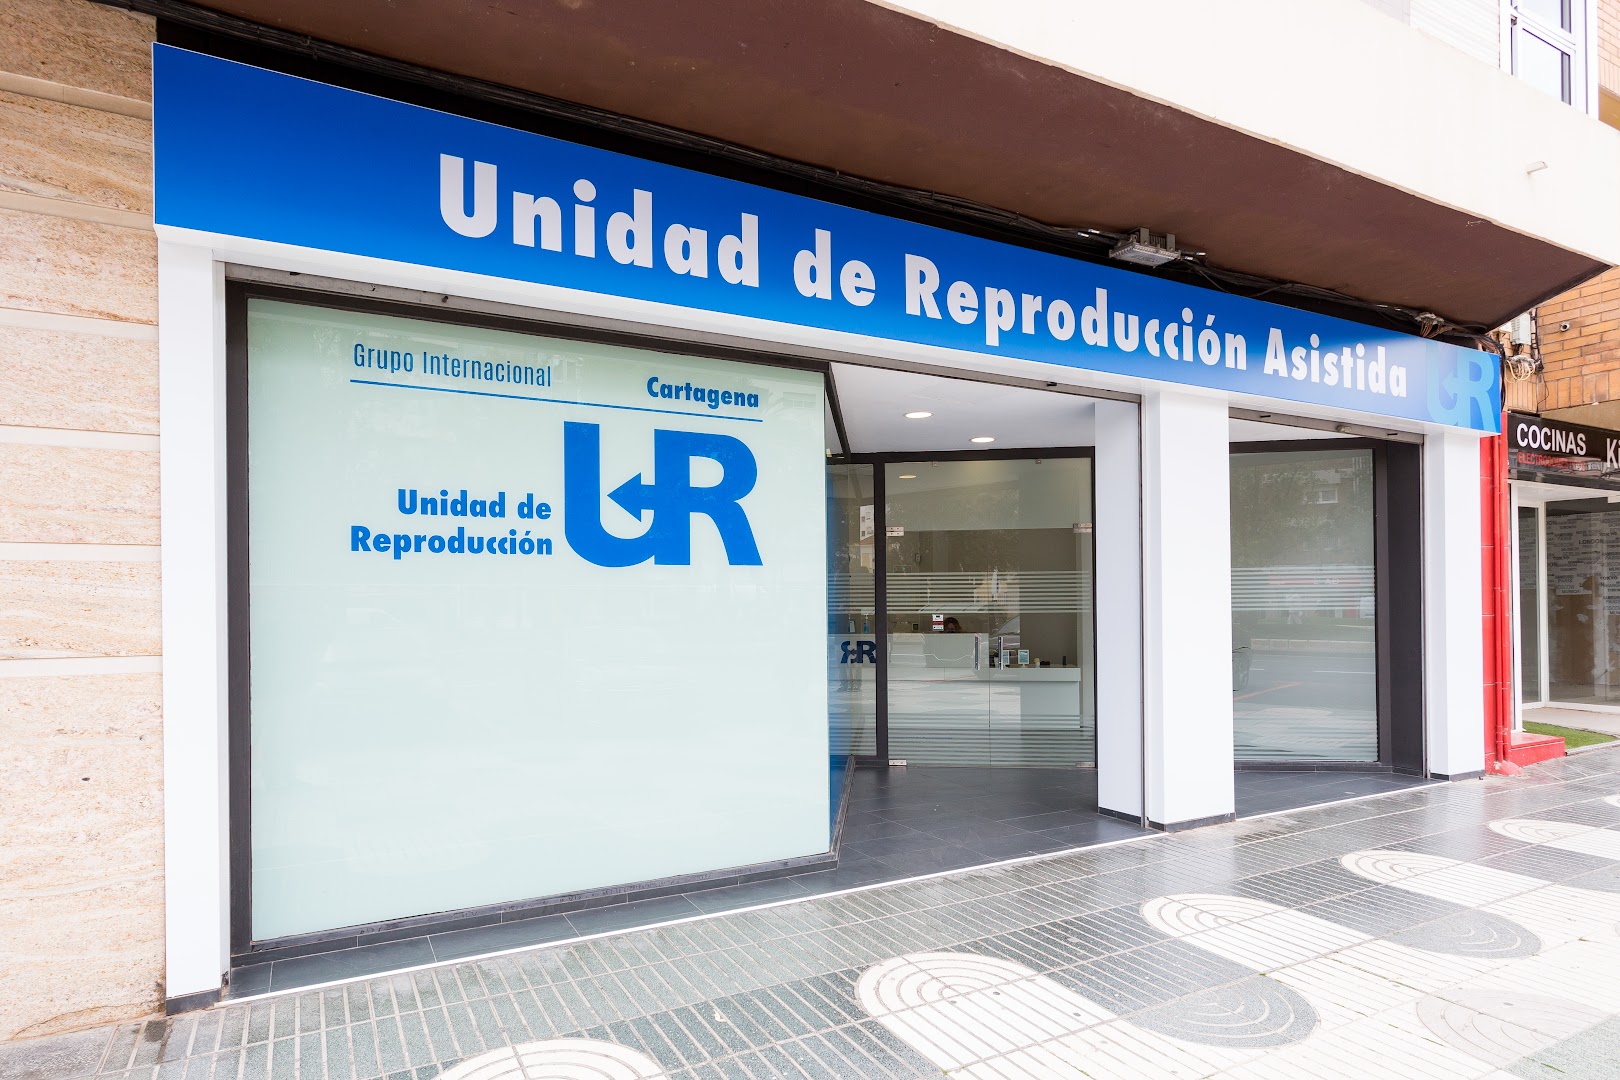 Unidad de Reproducción UR Cartagena